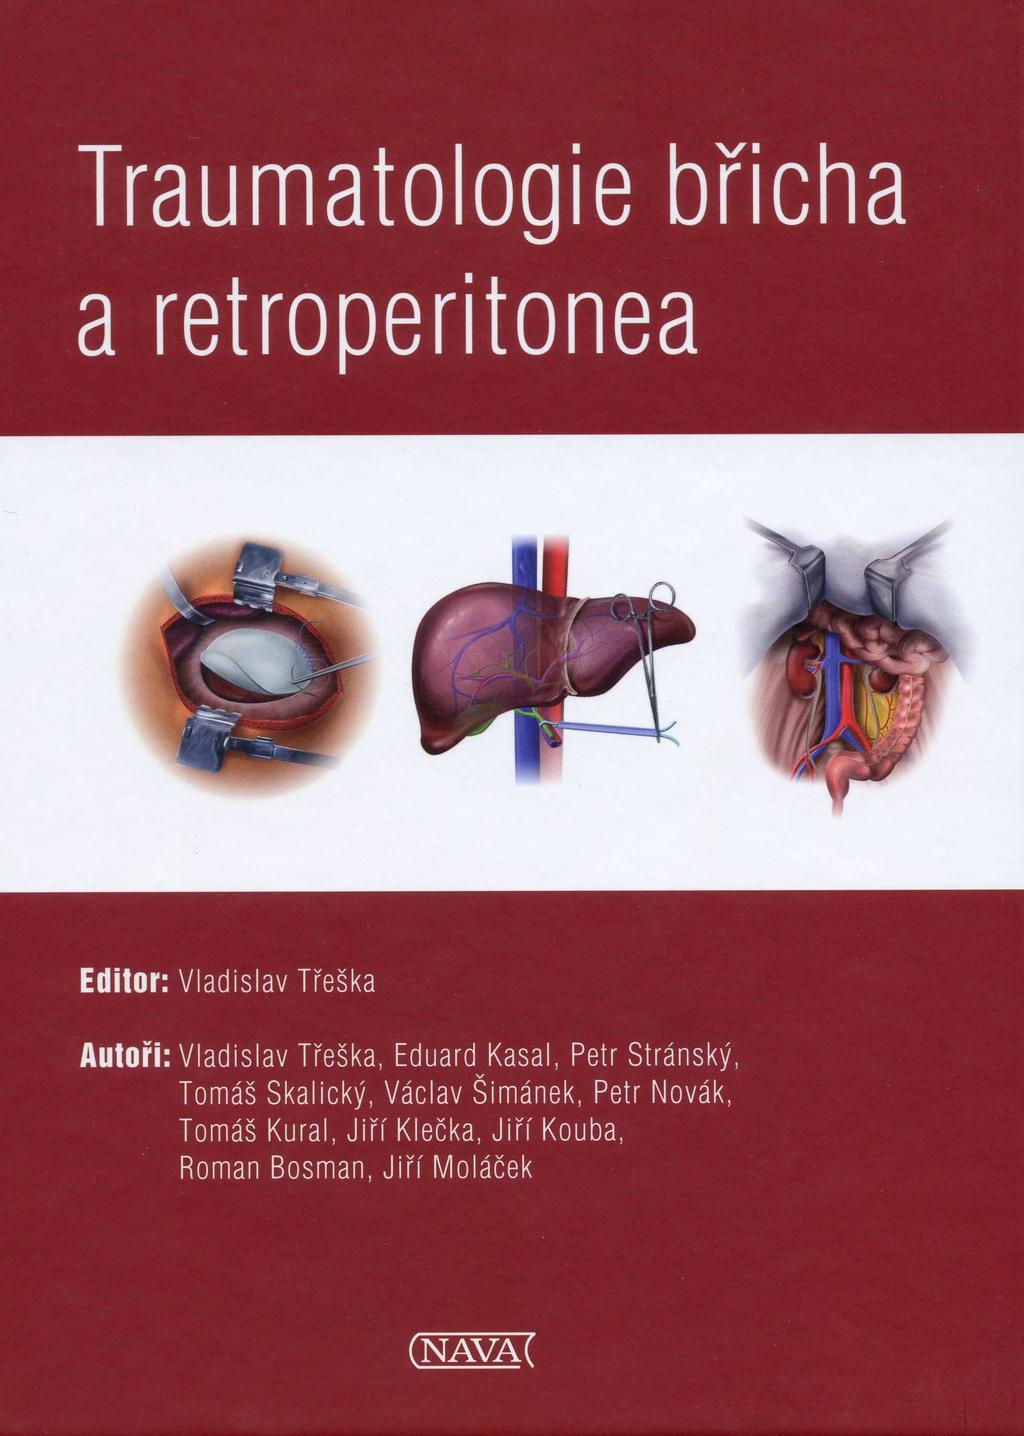 Právě vychází Třeška V. a kol. Traumatologie břicha a retroperitonea, Nava, 2013, 139 s.